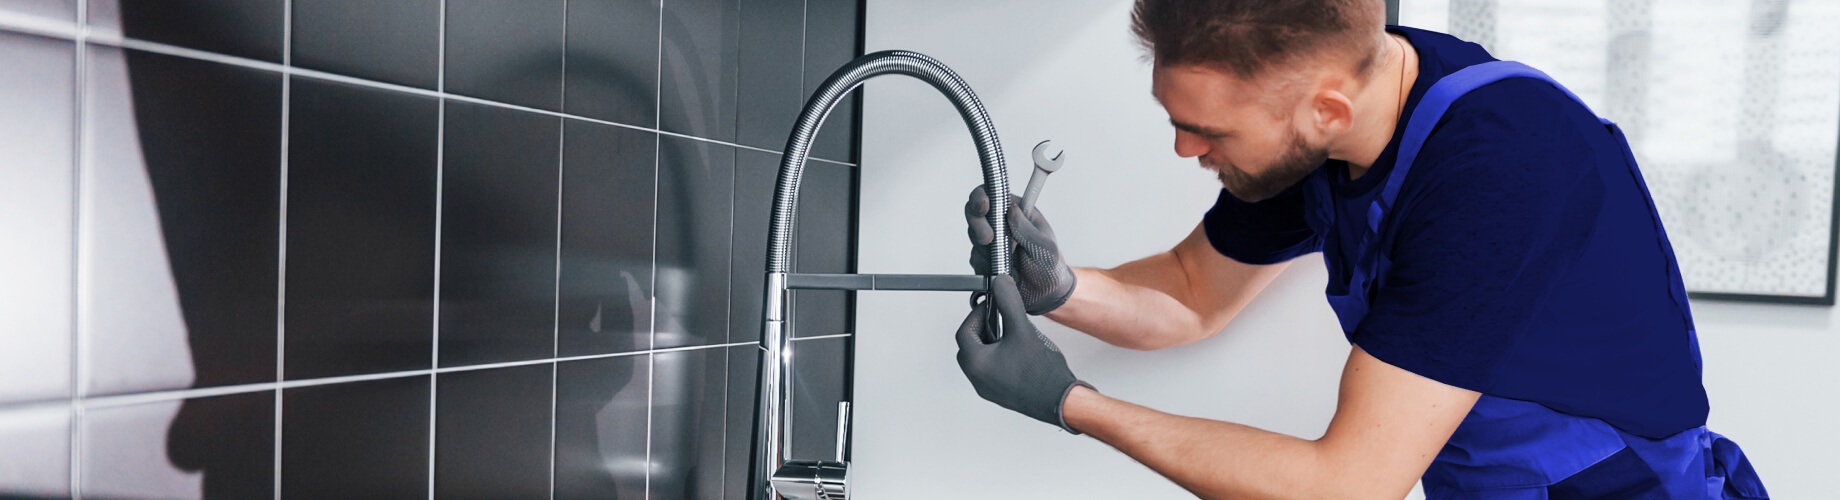 home warranty cover plumbing leaks